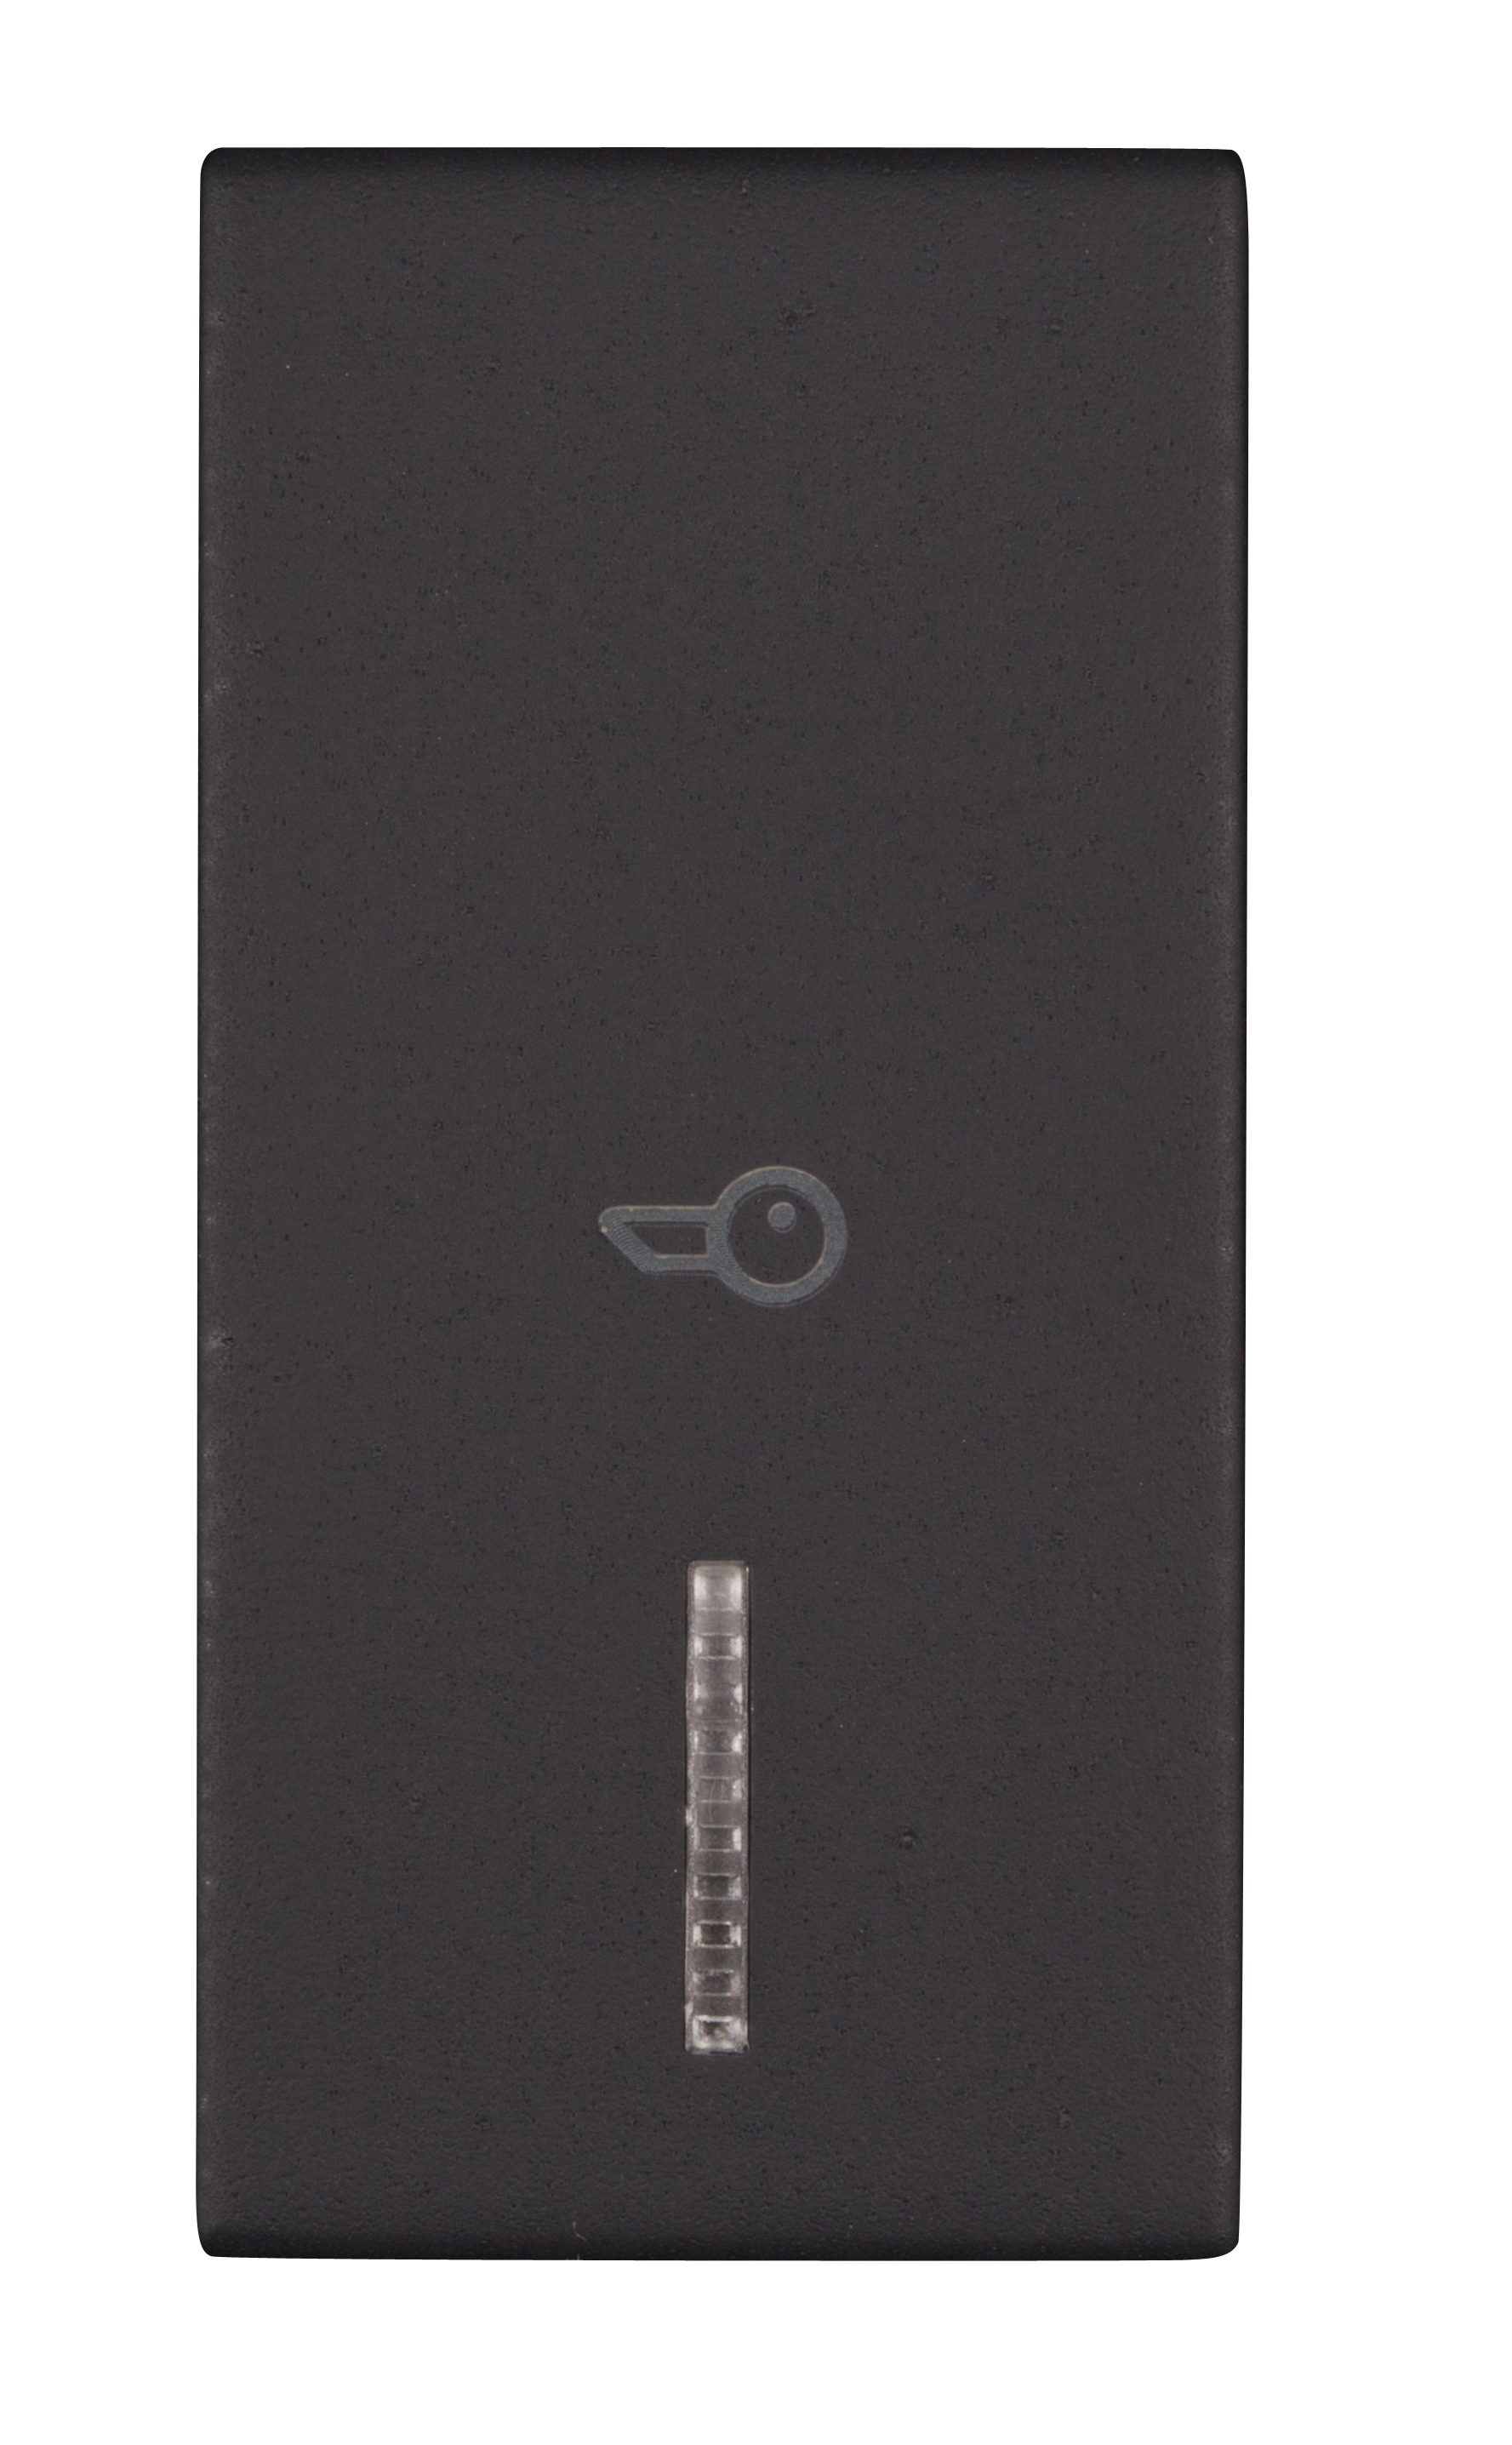 Foto: Schalterabdeckung mit Linse und Türsymbol 1M, schwarz (c) Schrack